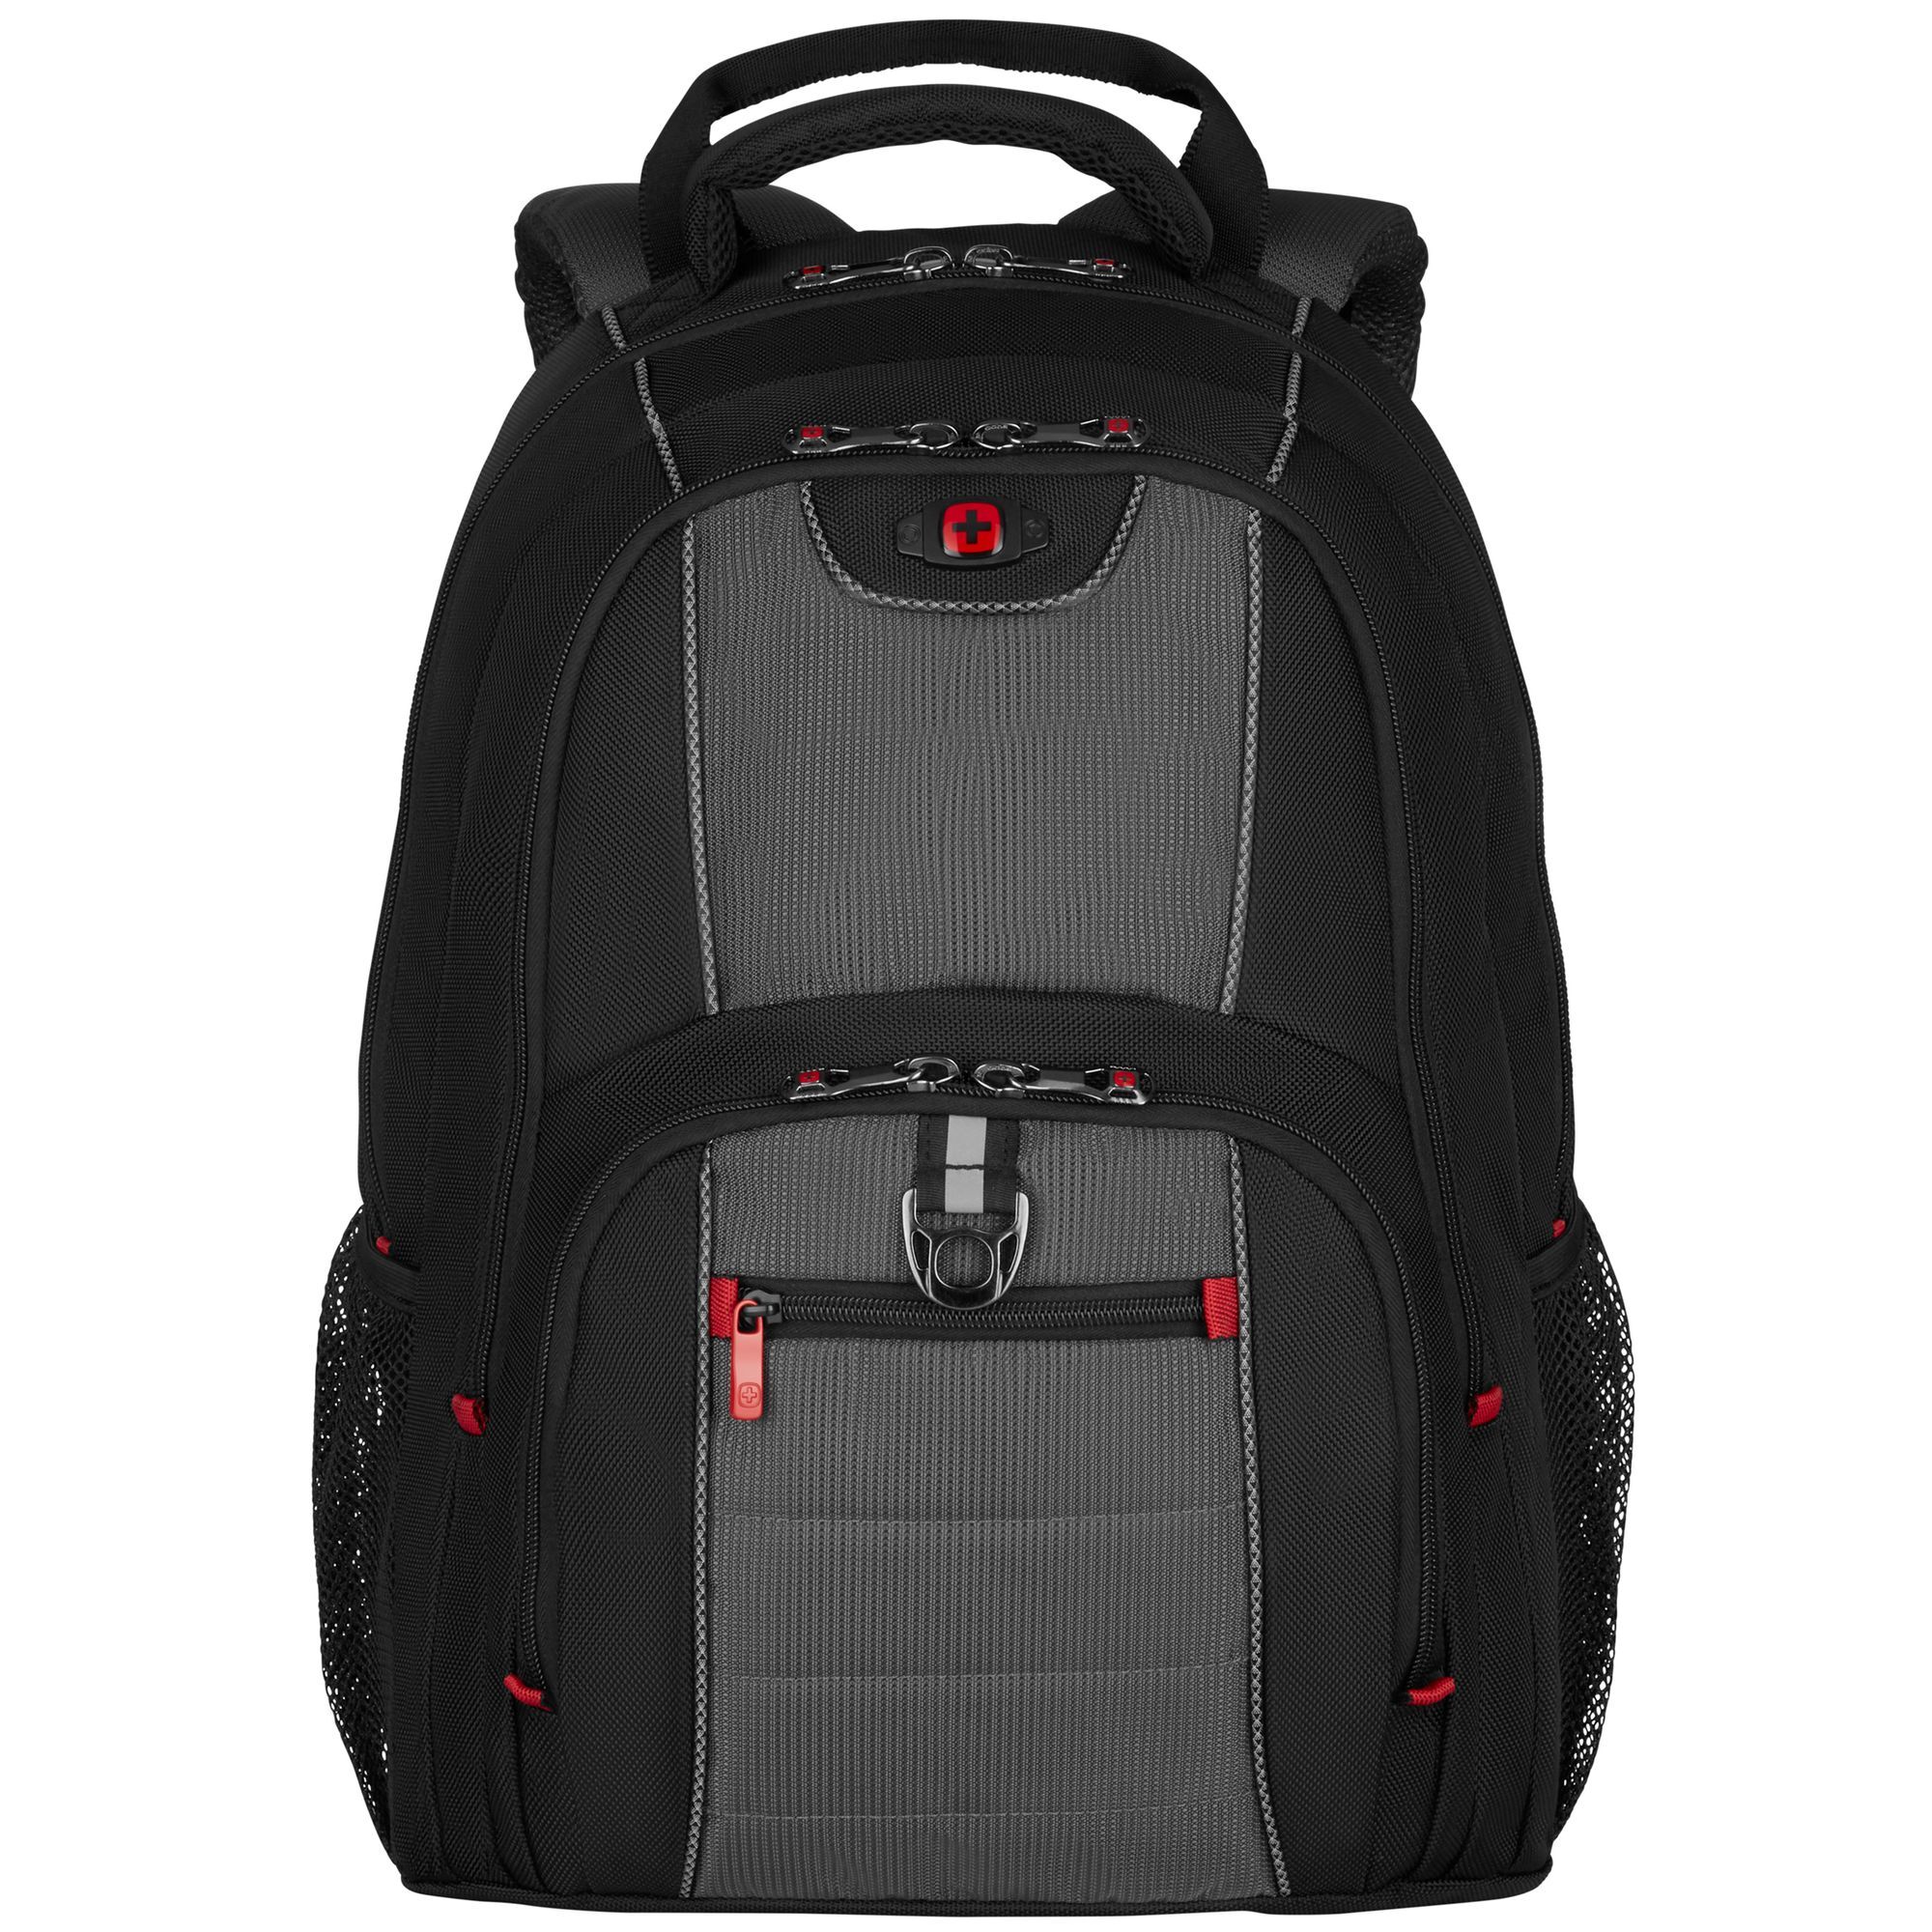 Рюкзак Wenger Pillar 16 48 cm Laptopfach, черный рюкзак wenger reload 14 42 cm laptopfach черный